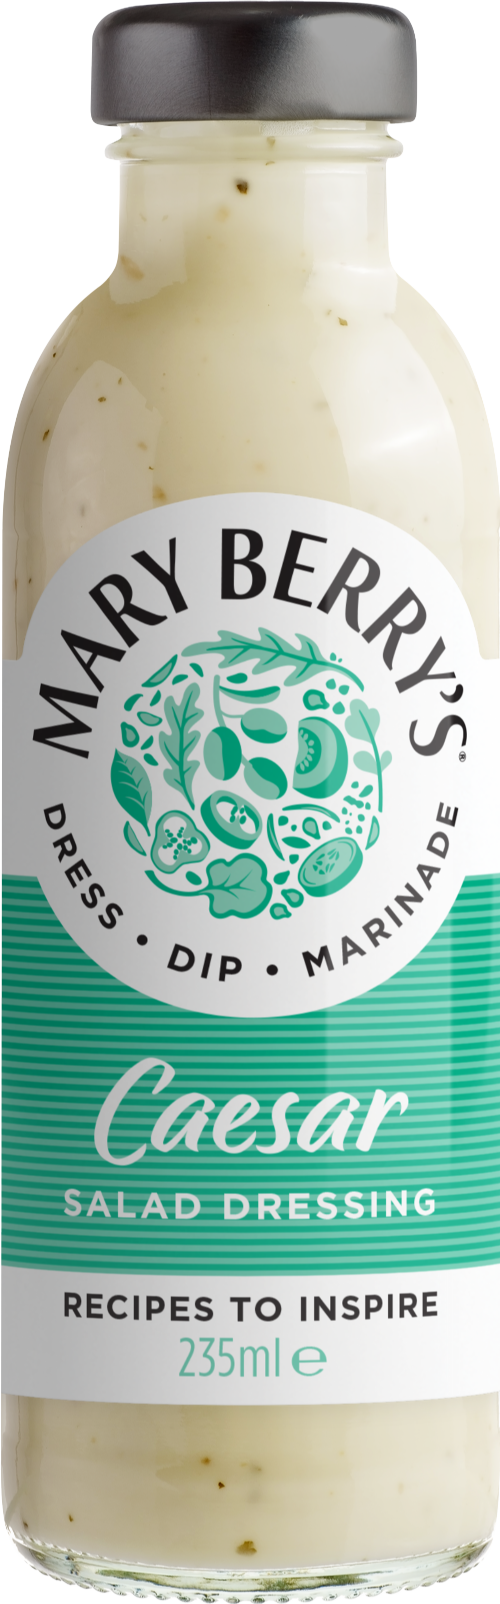 MARY BERRY'S Caesar Dressing 245ml